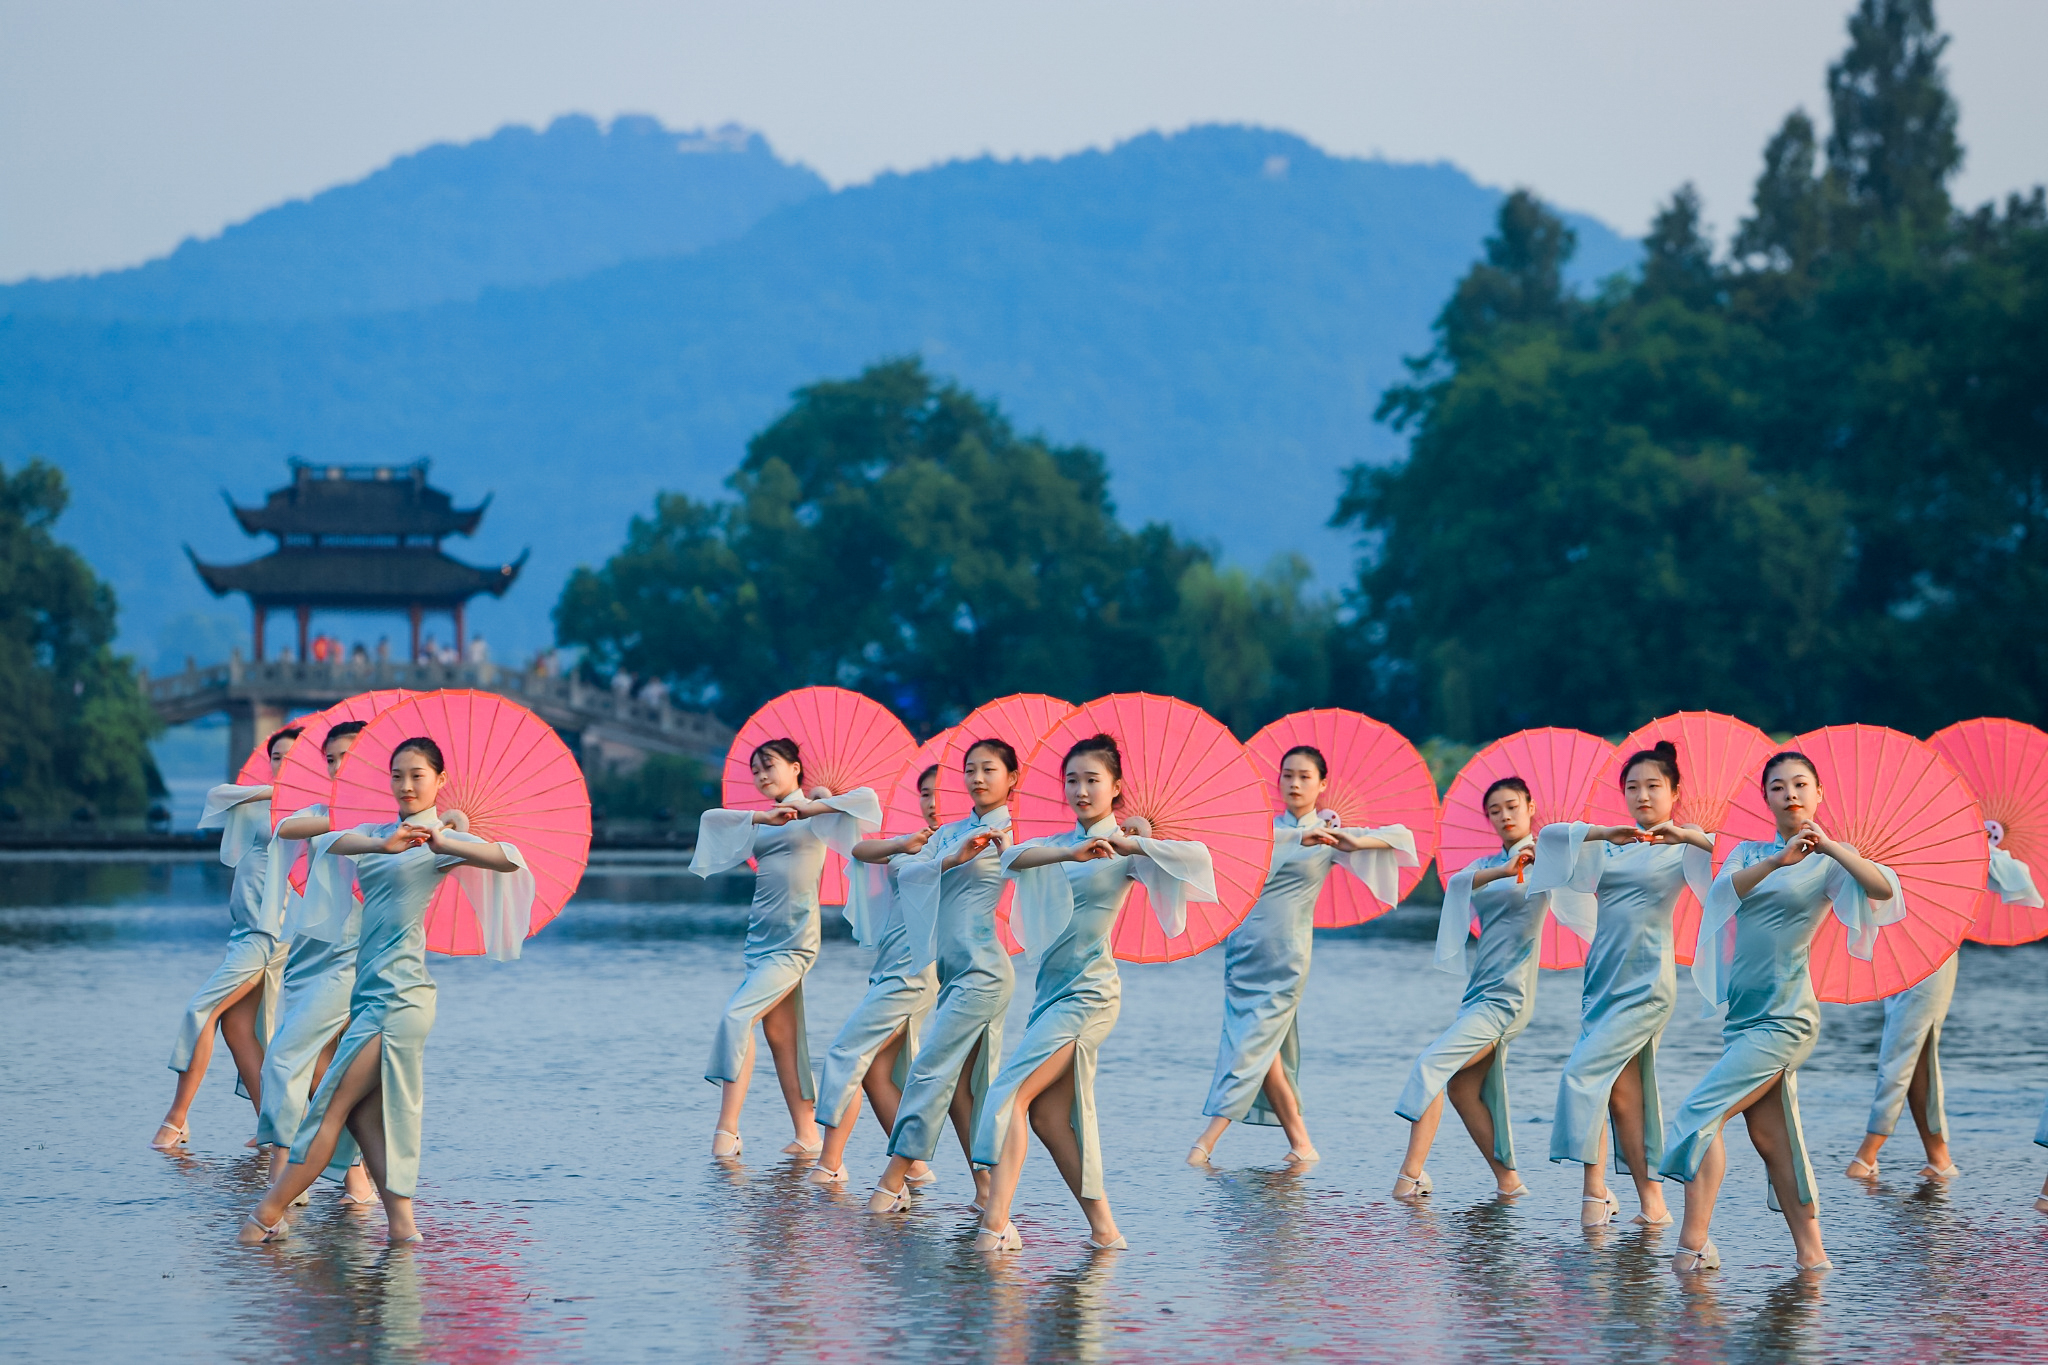 500 women each sporting a Qipao, dance in unison at Hangzhou's landmarks